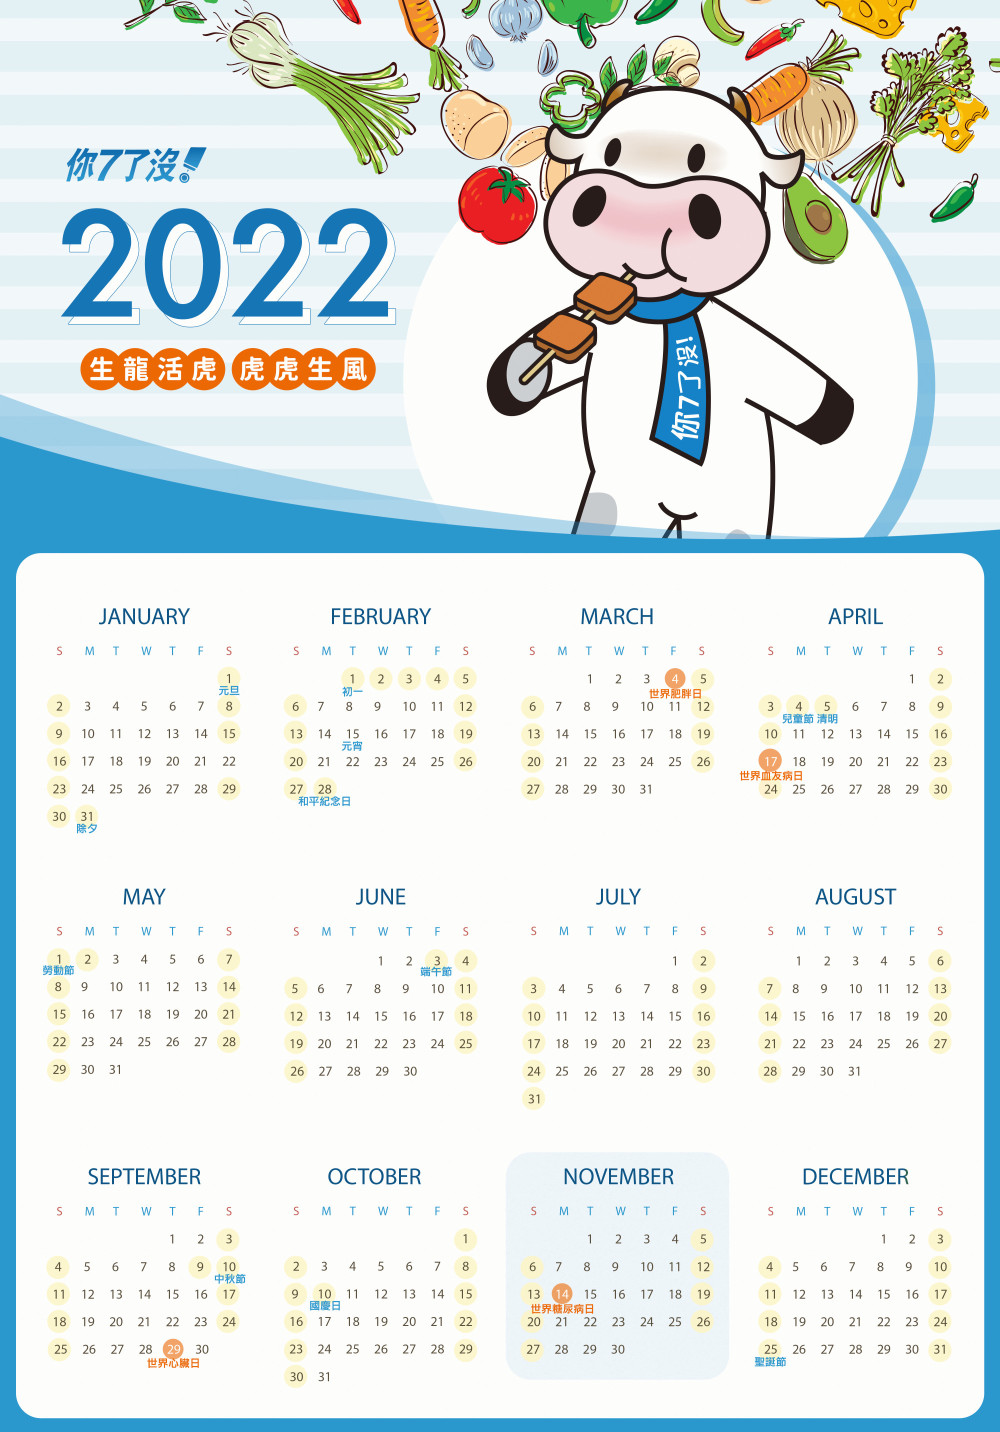 阿諾牛祝所有糖友2022新年快樂～快來下載糖友專屬年曆